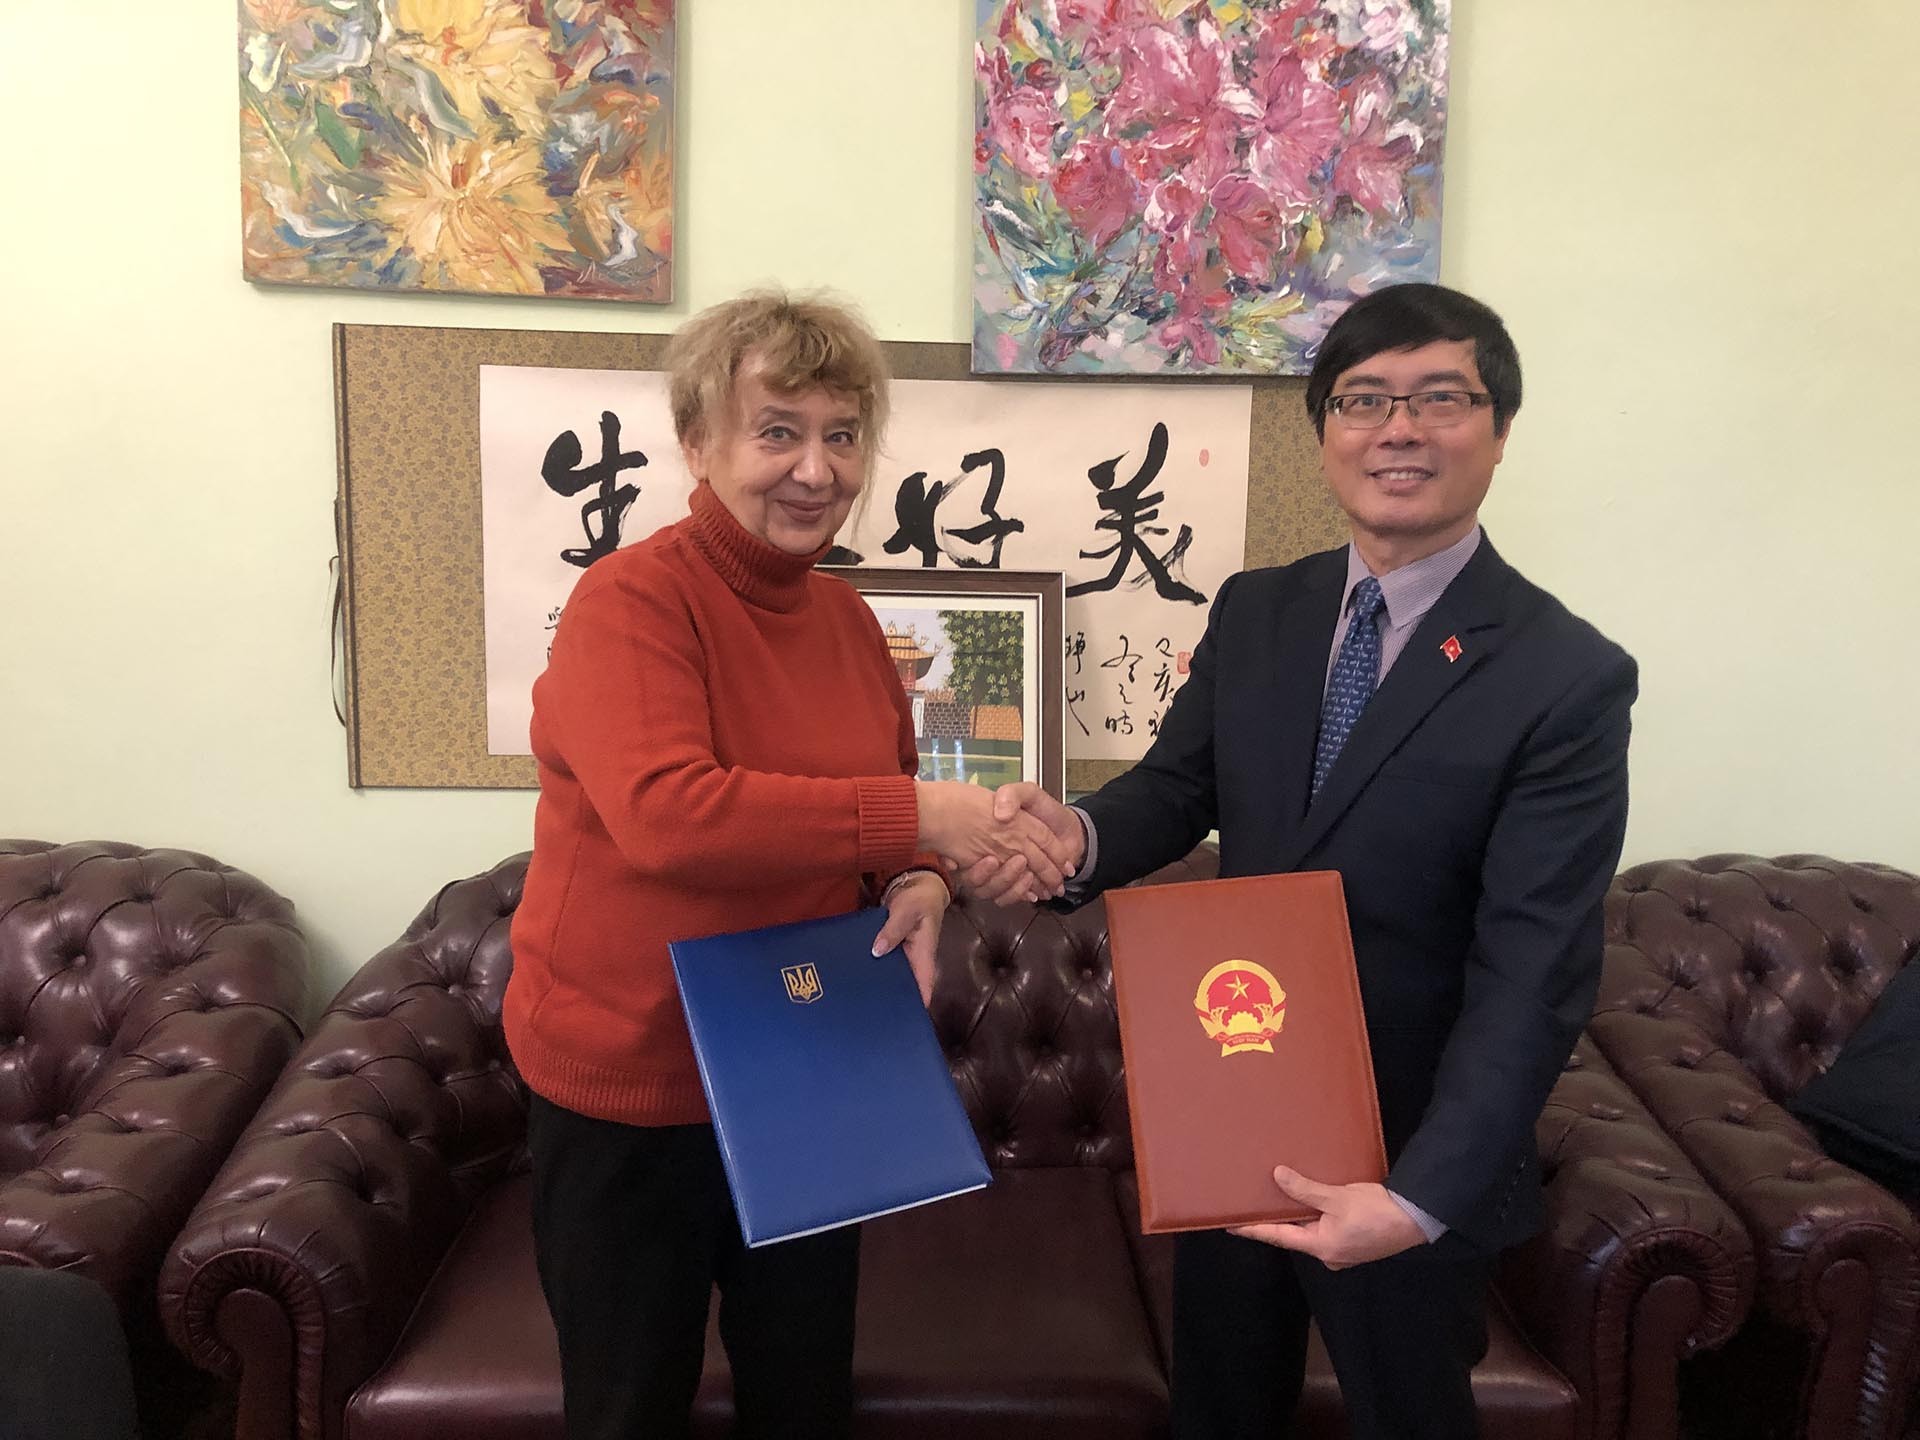 Đại sứ Việt Nam tại Ukraine Nguyễn Hồng Thạch và bà N.V. Zaimenko, Giám đốc Vườn Bách thảo quốc gia mang tên M. G. Grishko ký Thoả thuận hợp tác.